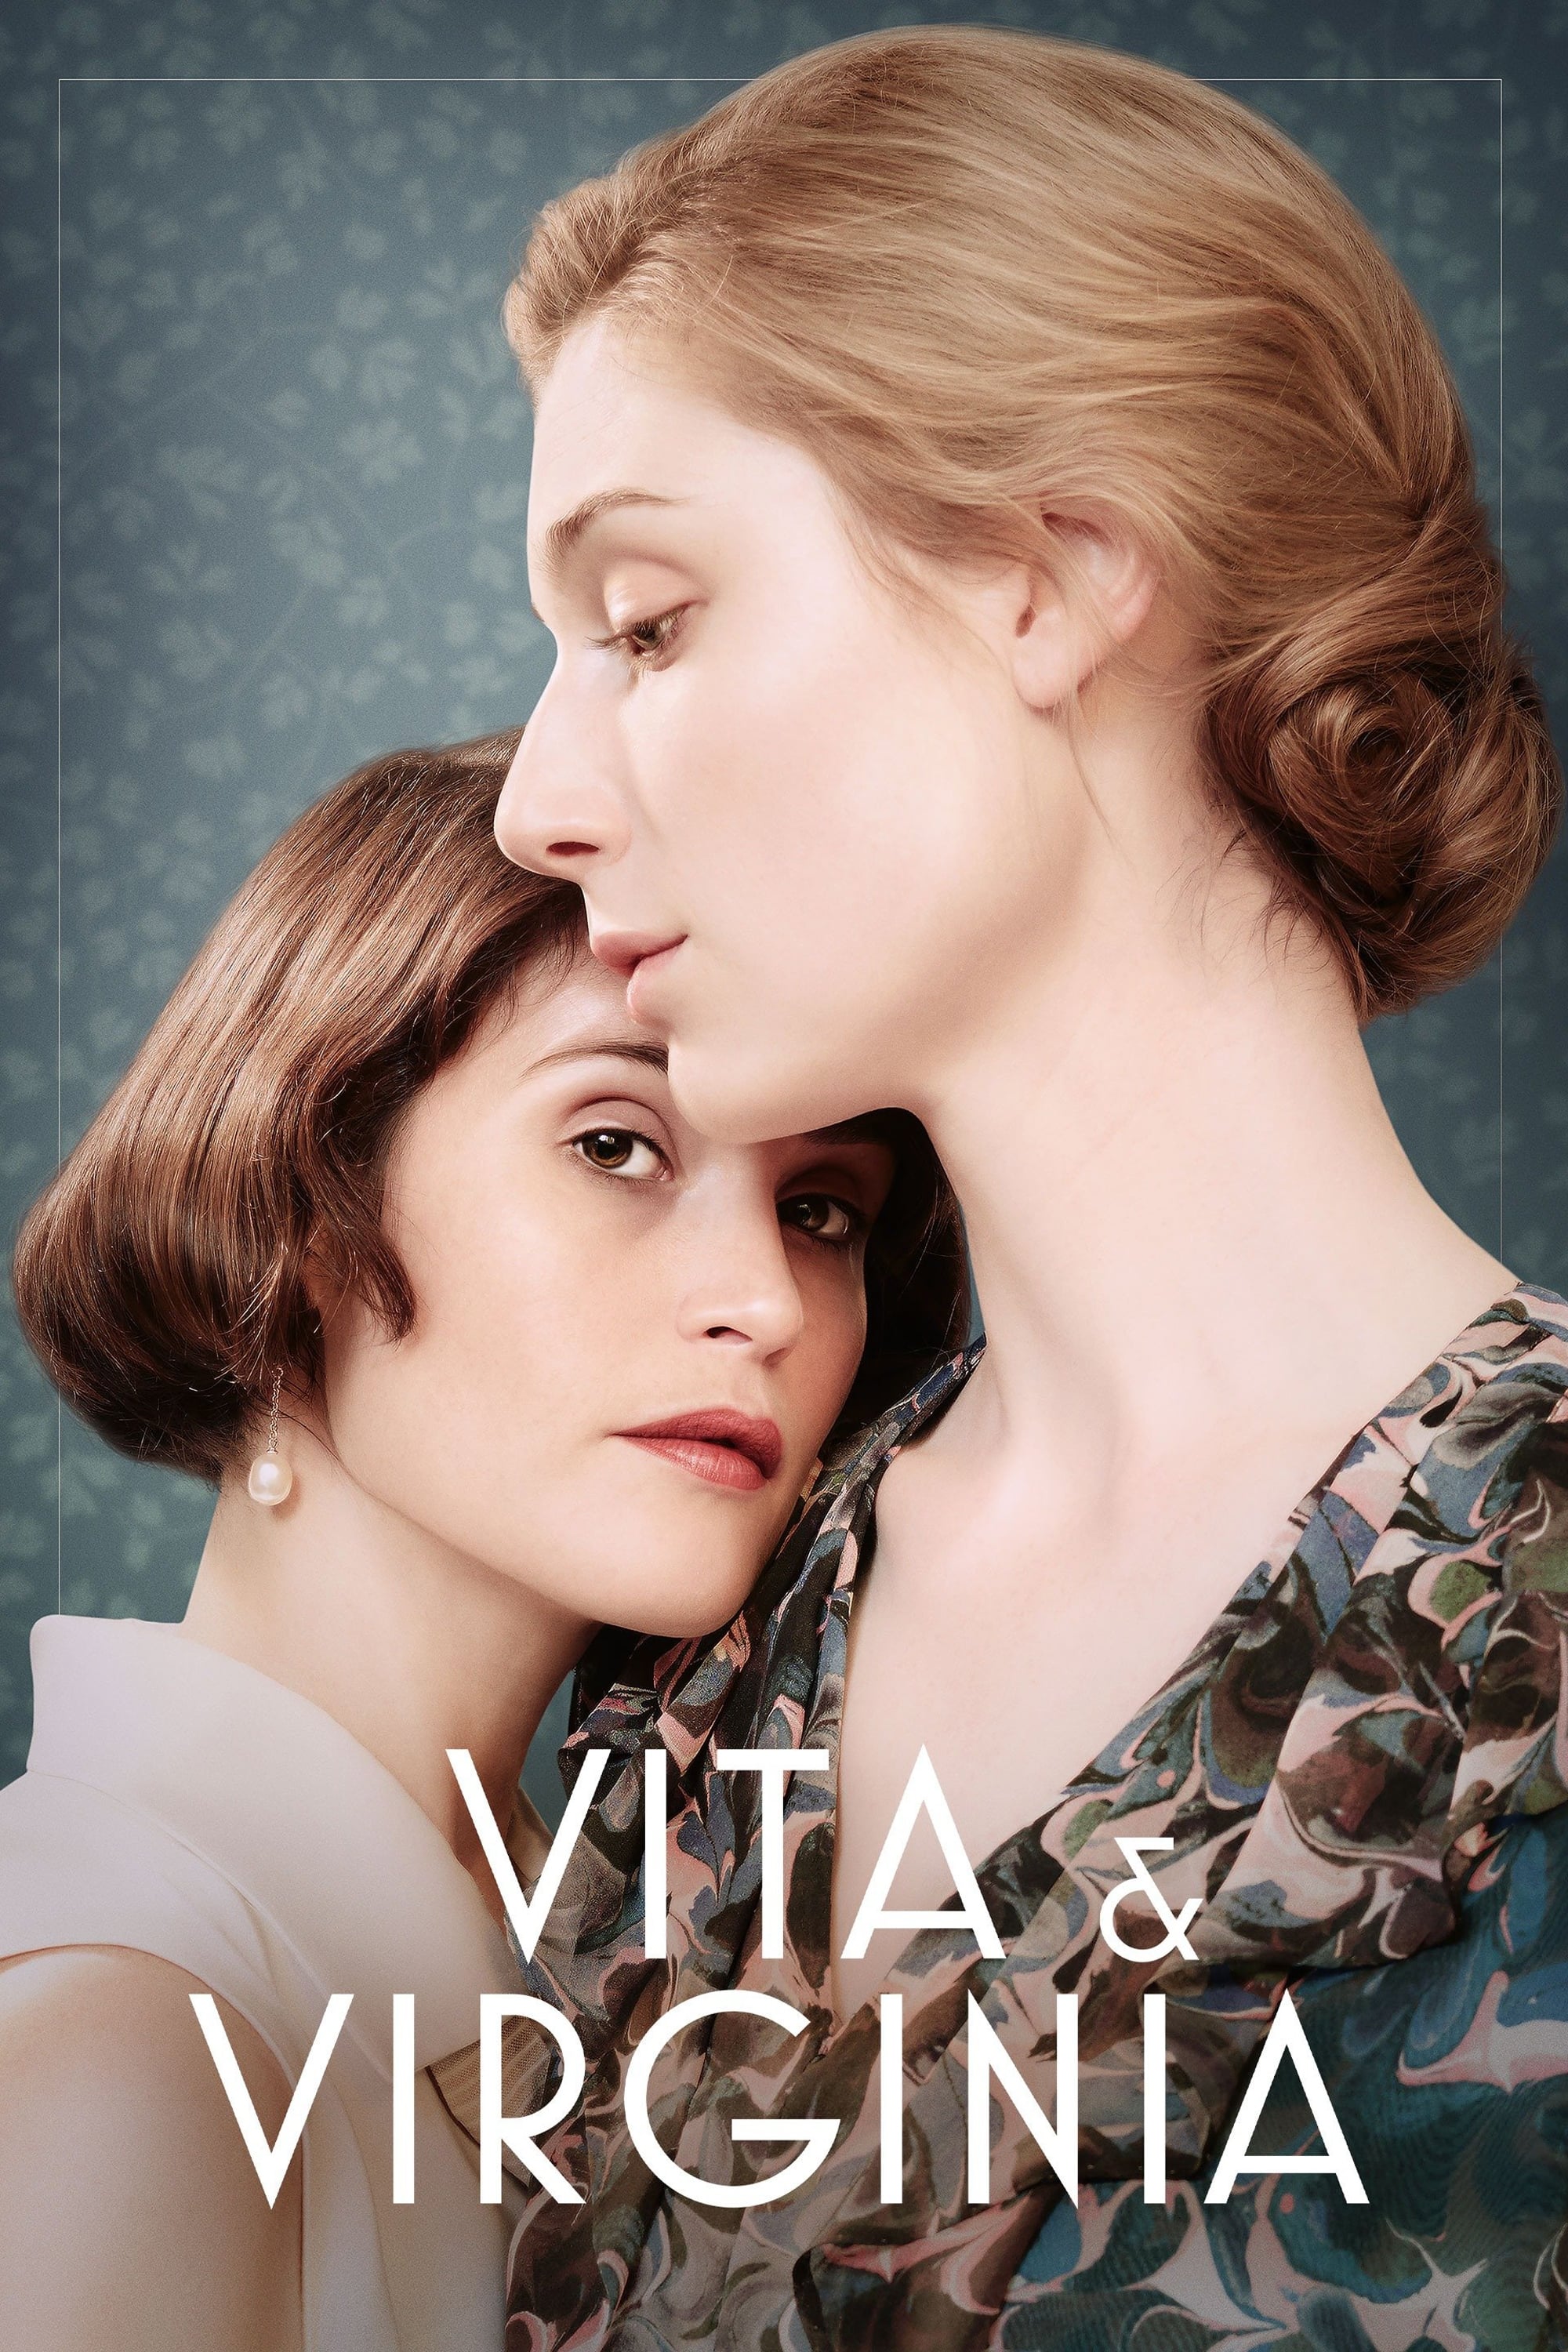 Vita et Virginia (2019)